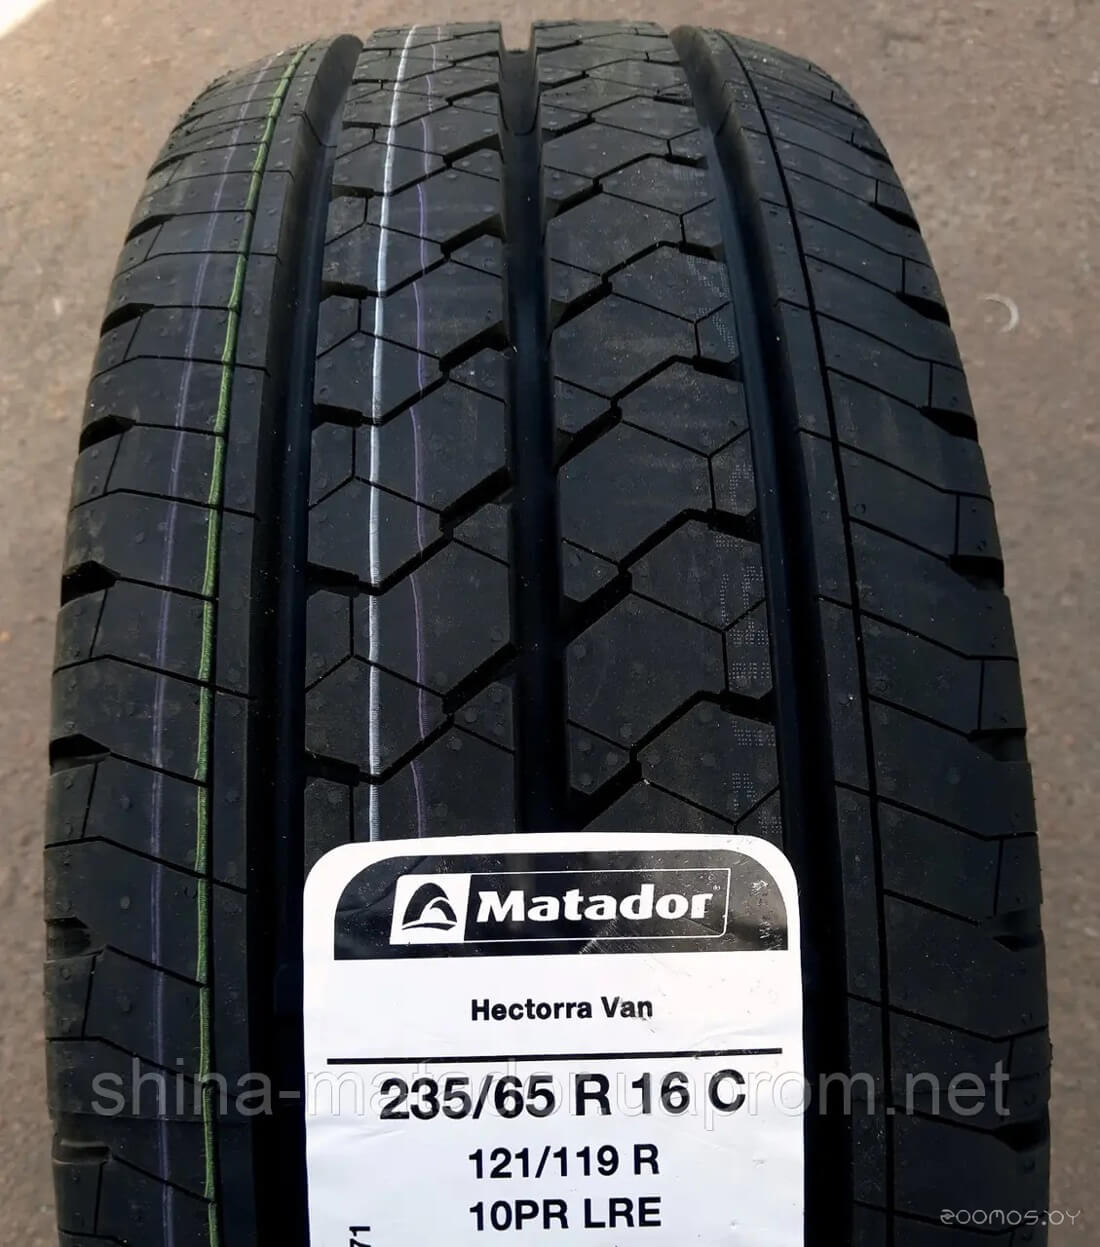 Matador Hectorra Van 195/65R16C 104/102T